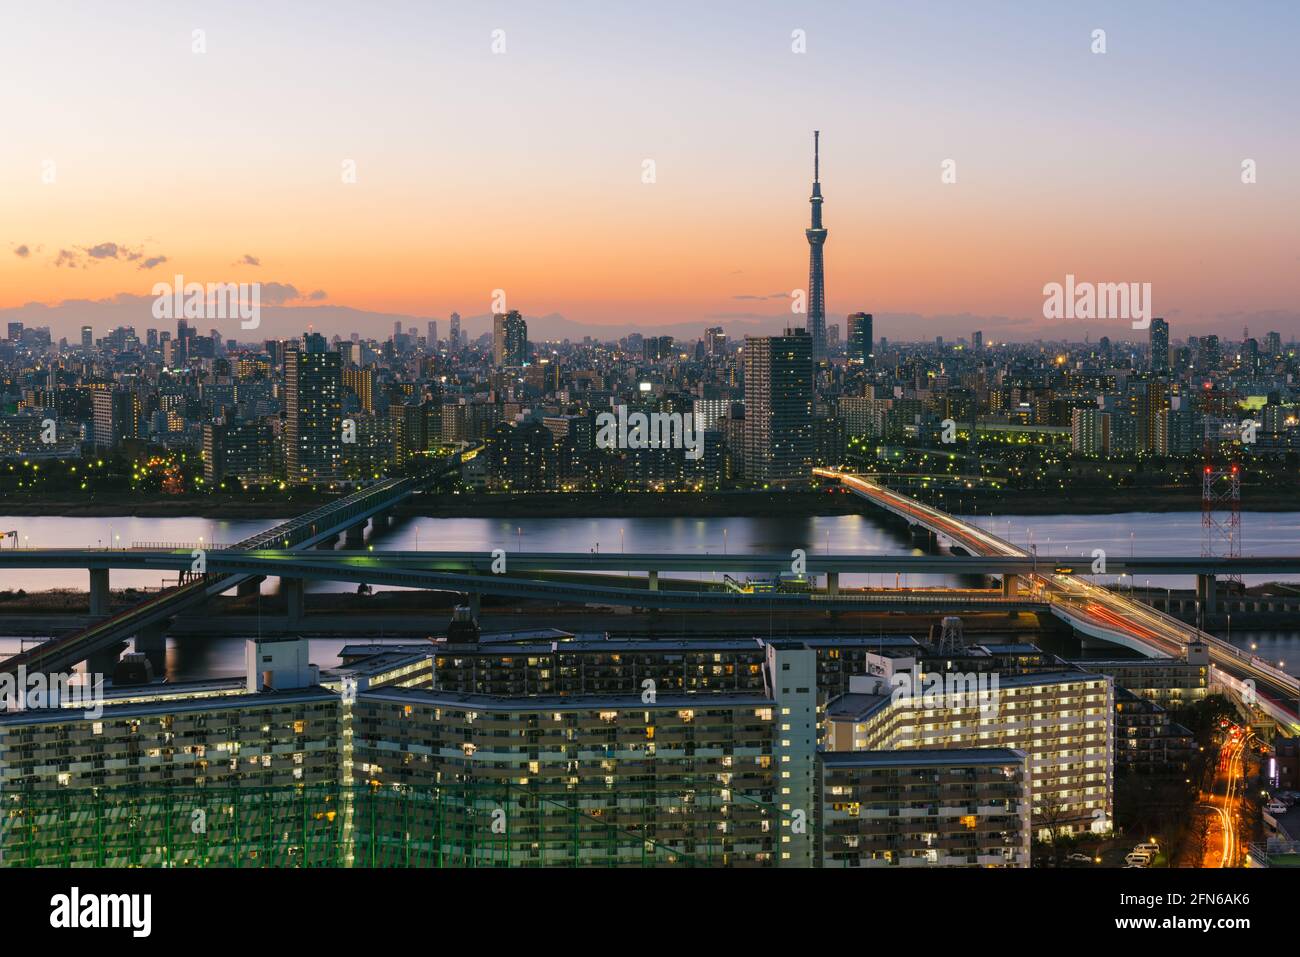 Tokyo, Japon - 10 janvier 2016 : Tokyo Skyline au crépuscule, vue sur le quartier d'Asakusa, le fleuve Arakawa et Tokyo Skytree Banque D'Images